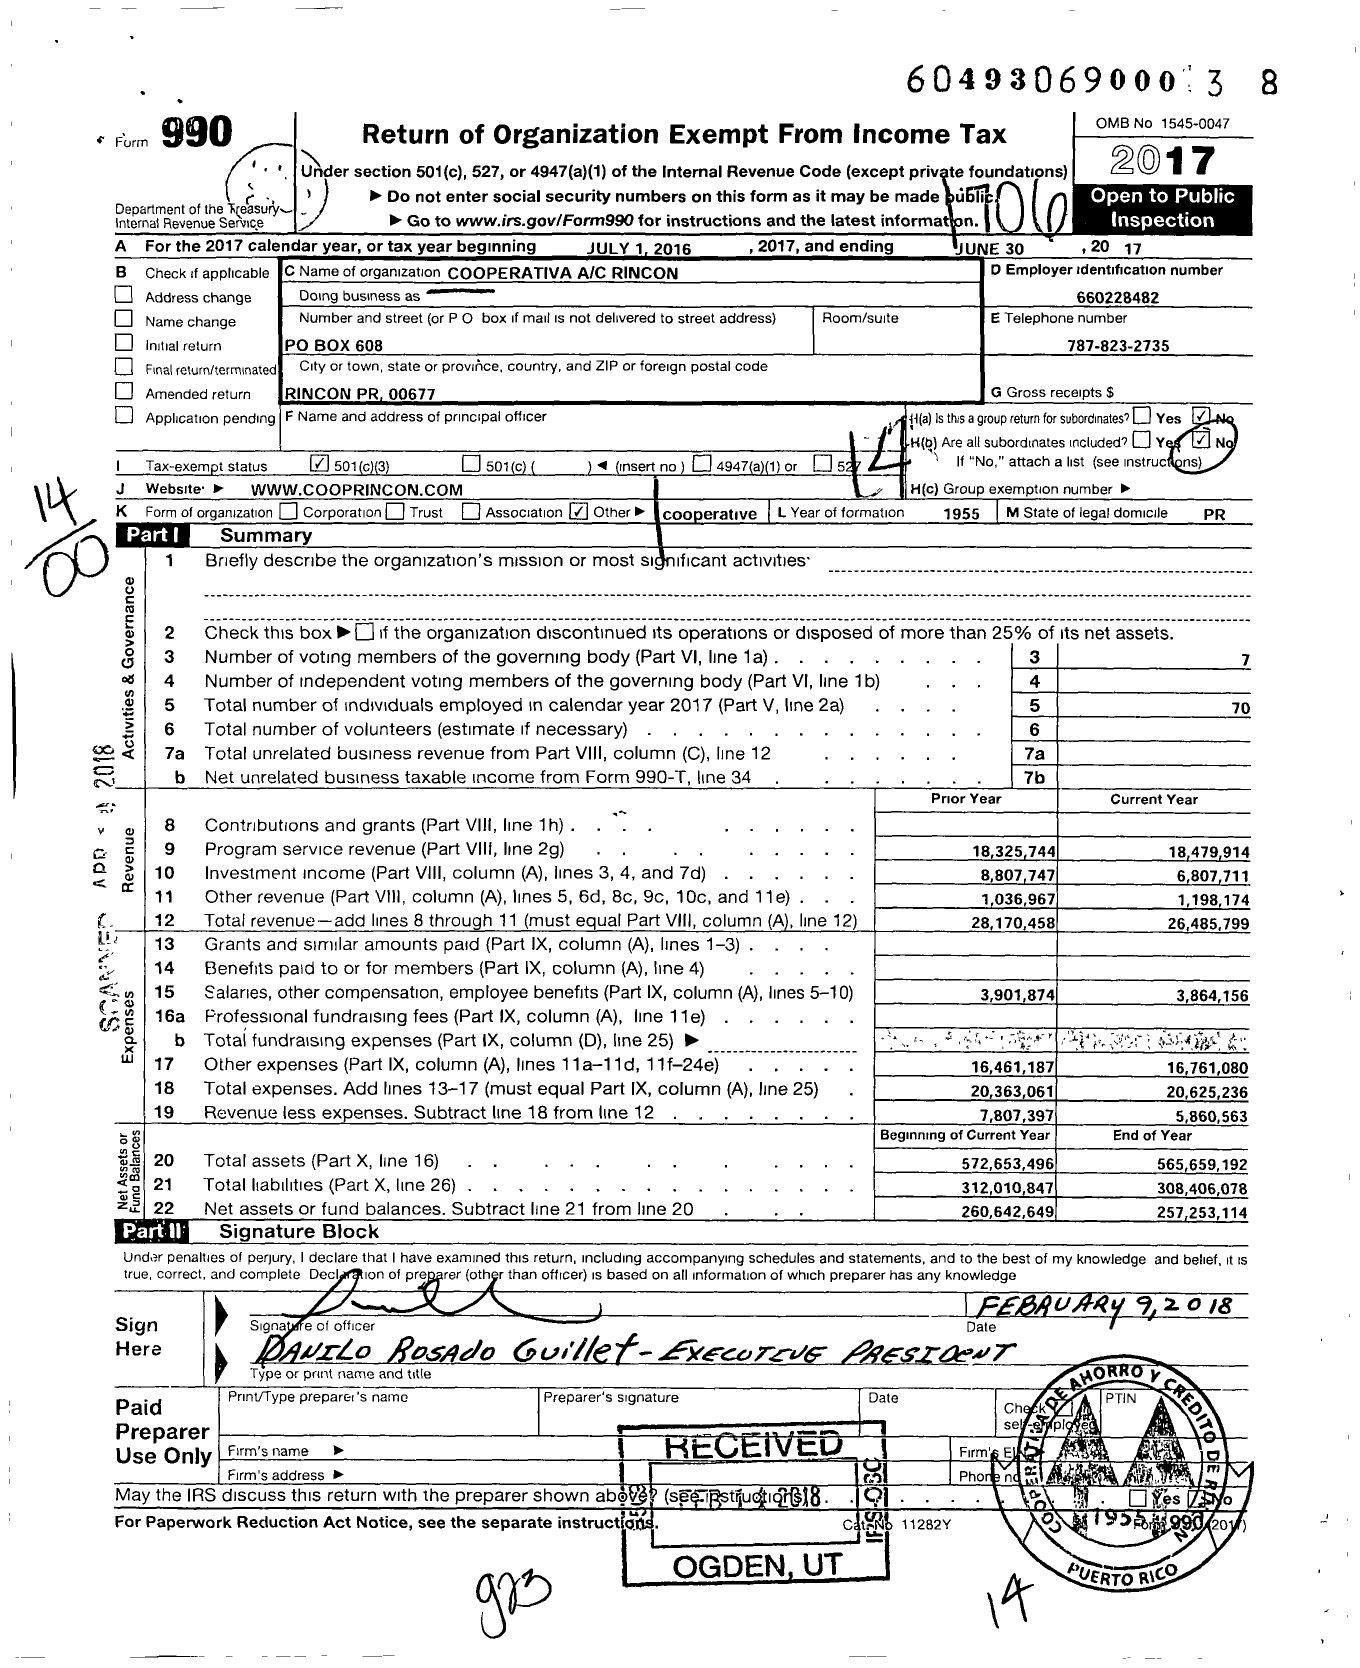 Image of first page of 2016 Form 990 for Cooperativa de Ahorro Y Credito de Rincon